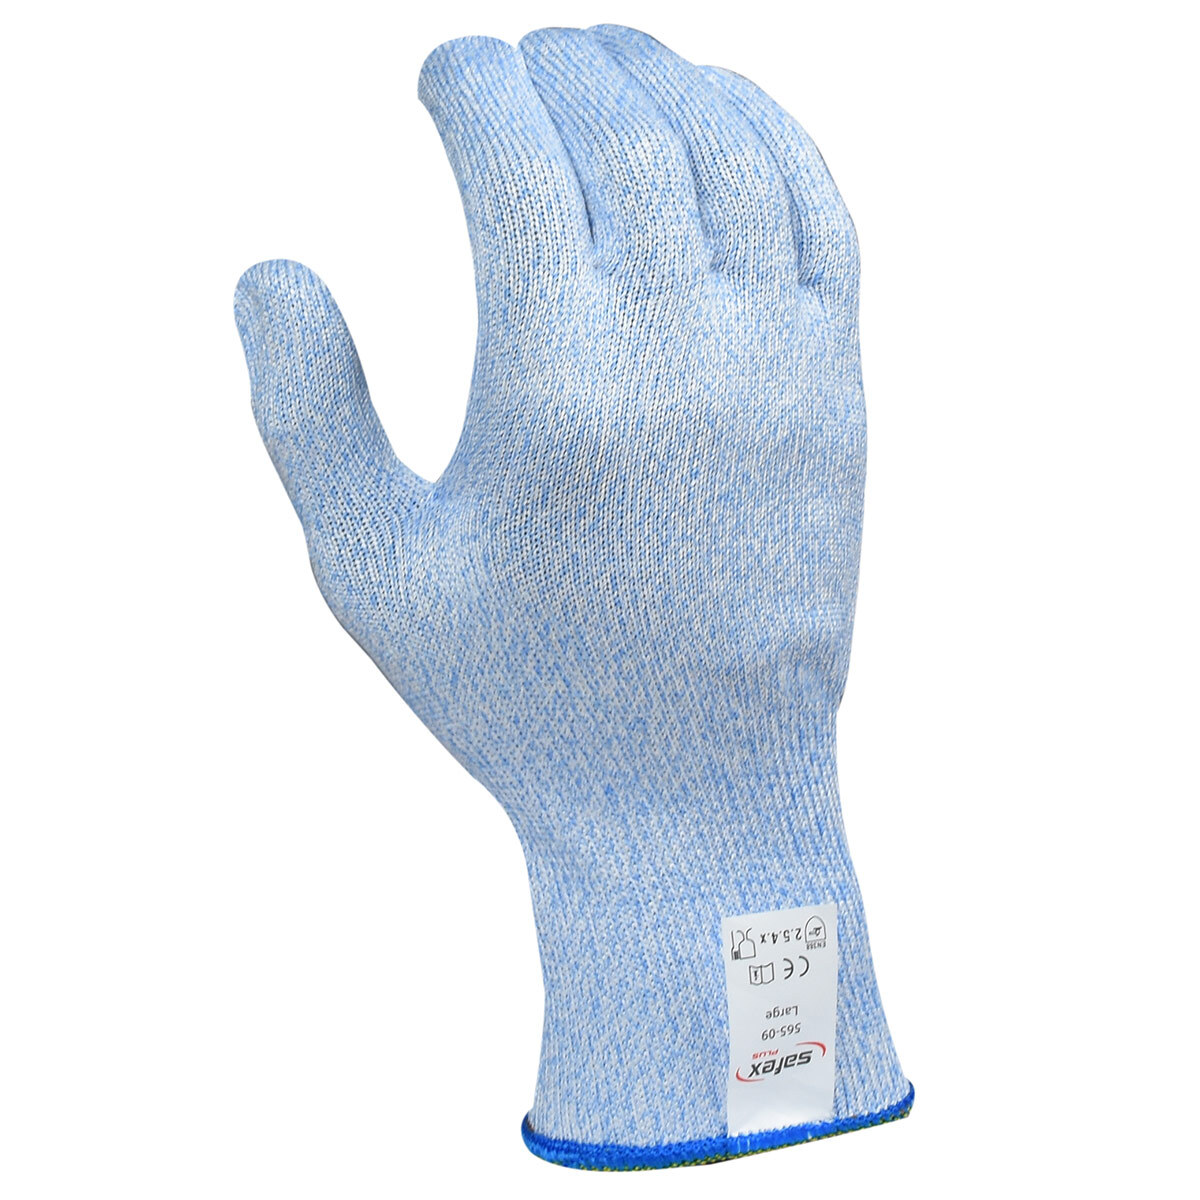 Safex Plus Level 5 Cut Resistant Glove - Blue